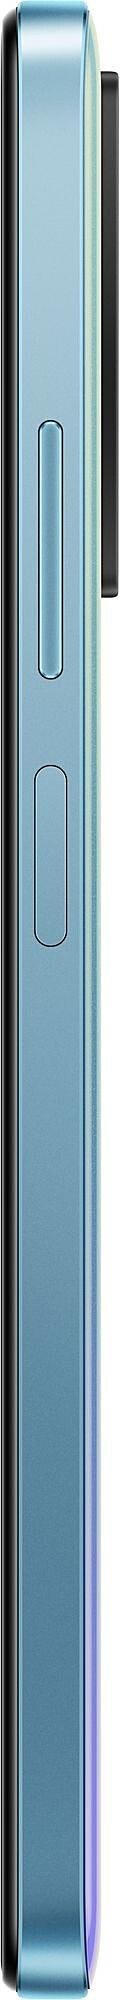 Смартфон Xiaomi Redmi Note 11 4/64GB Star Blue